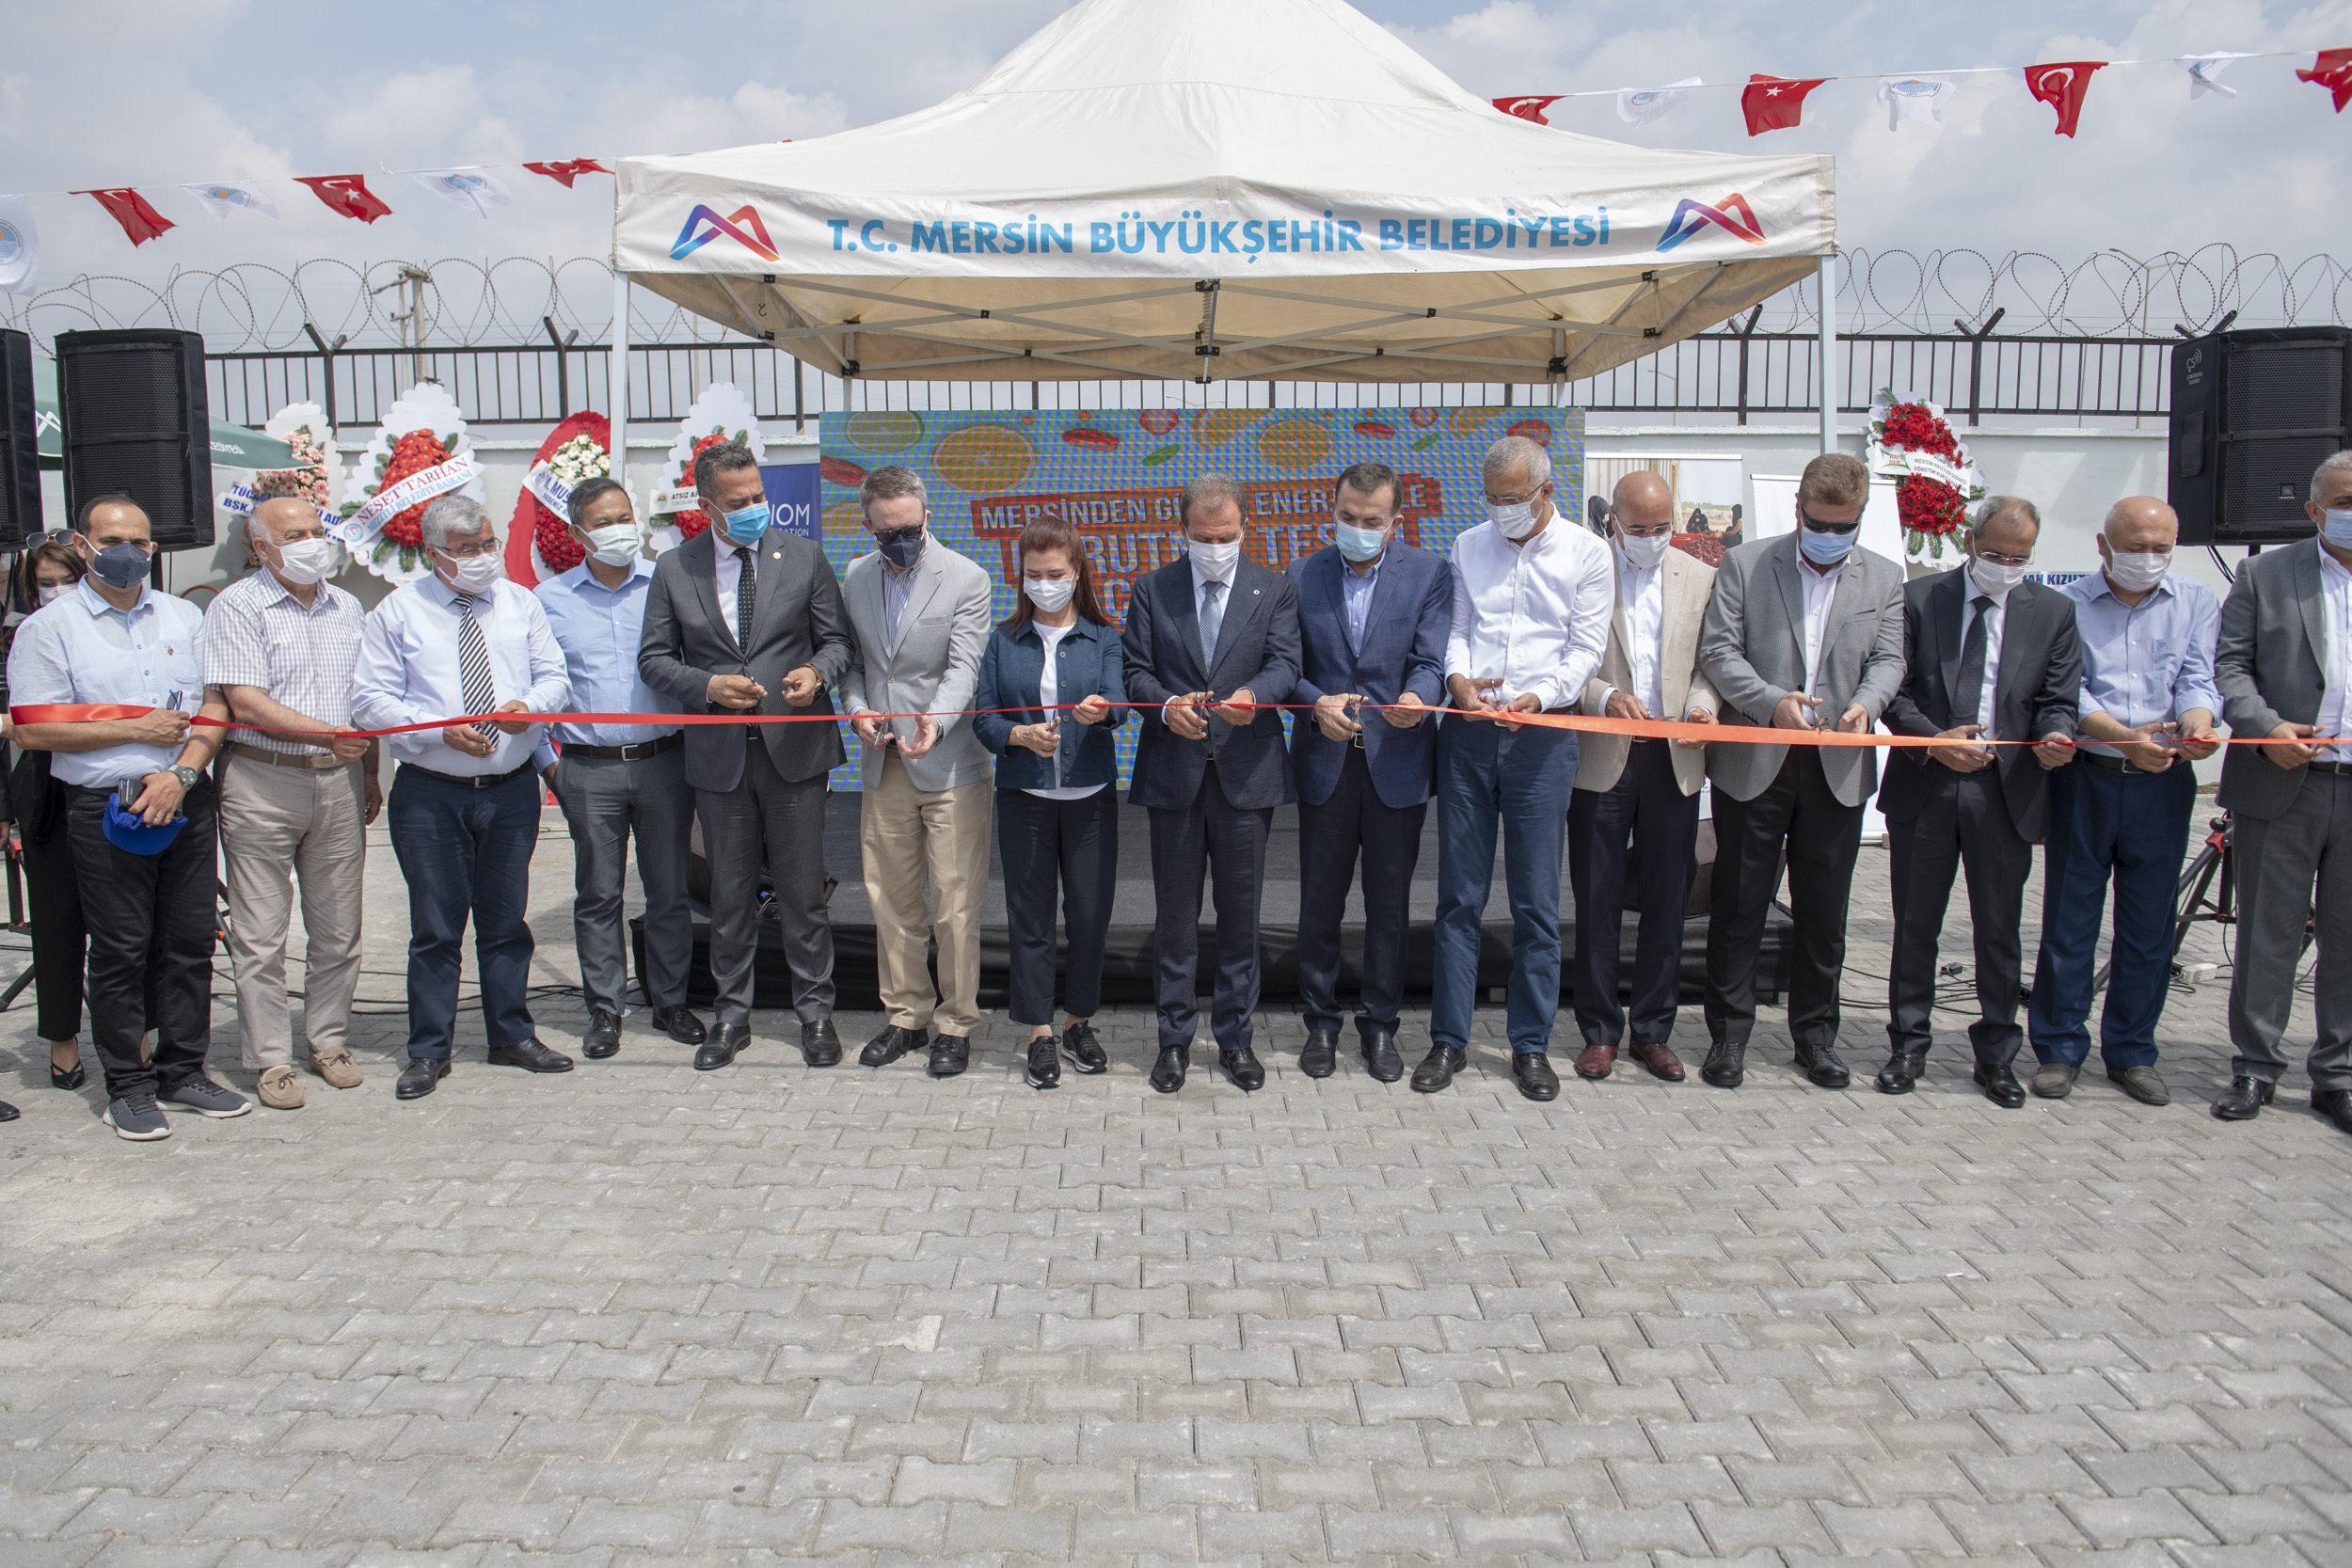  Mersin Büyükşehir Belediyesi ‘Mersinden Güneş Enerjisi İle Kurutma Tesisi’nin Açılışını Yaptı